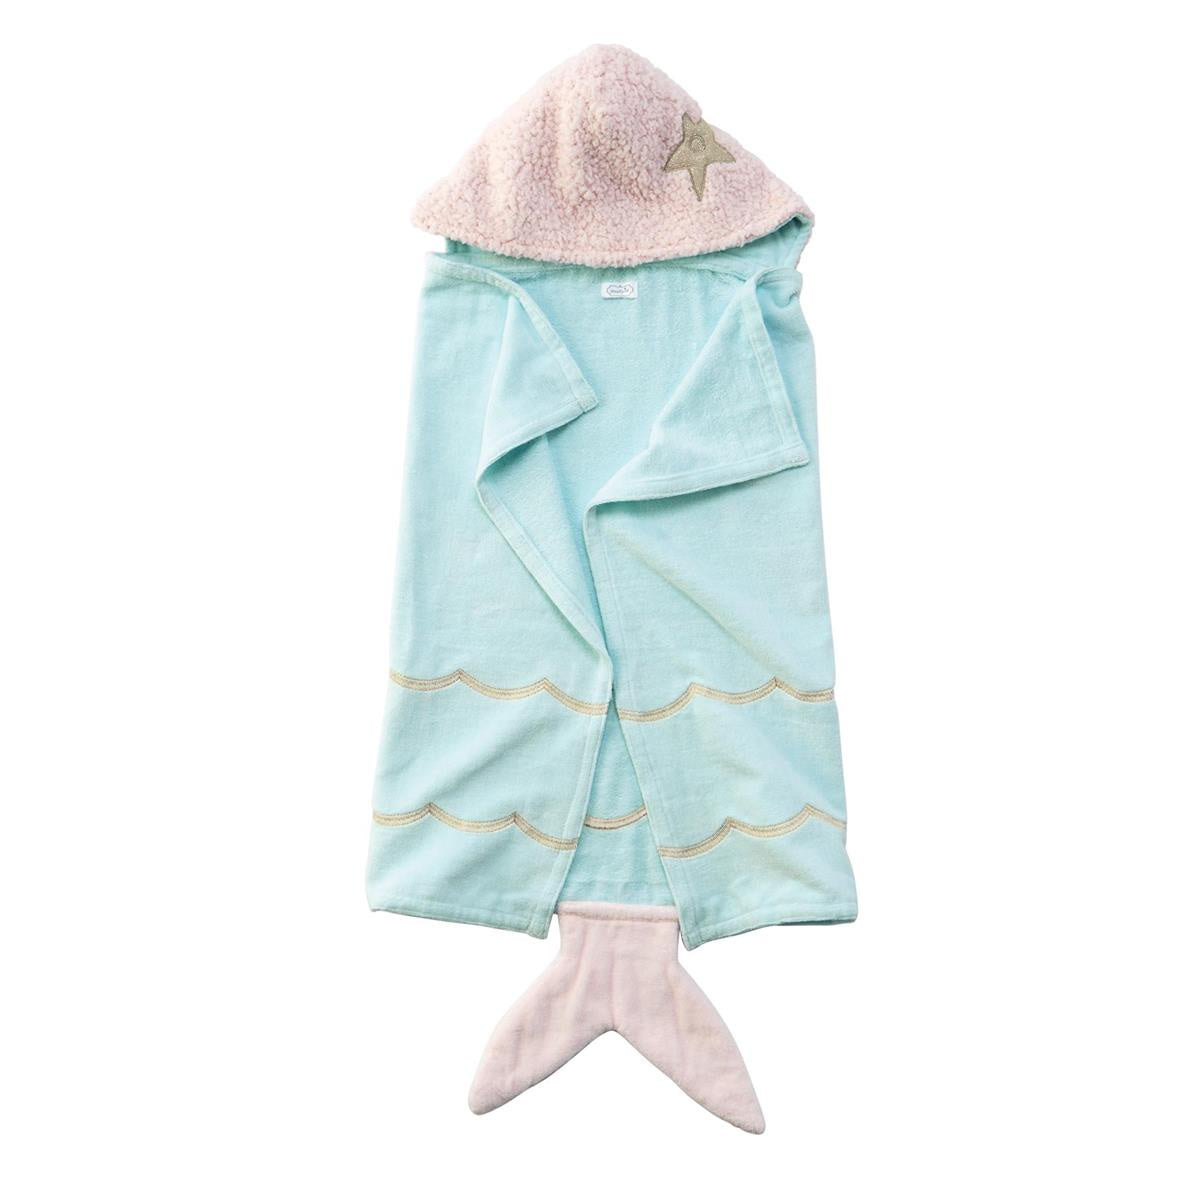 Mermaid Baby Hooded Towel